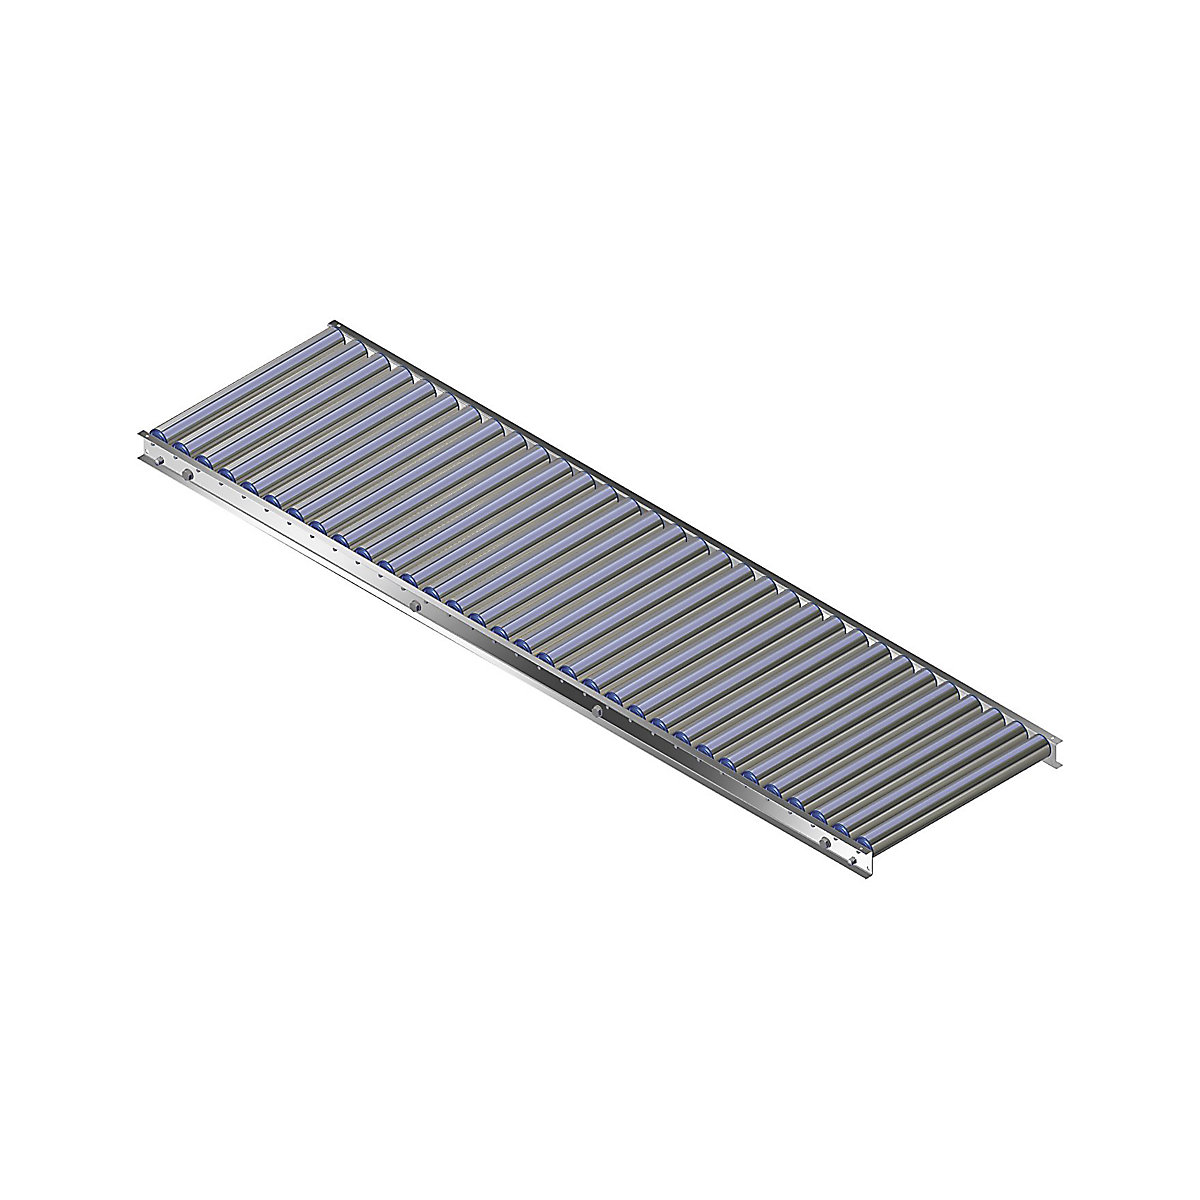 Könnyű görgős pálya, alumíniumkeret alumínium görgőkkel – Gura, pályaszélesség 500 mm, tengelytávolság 62,5 mm, hossz 2,0 m-12